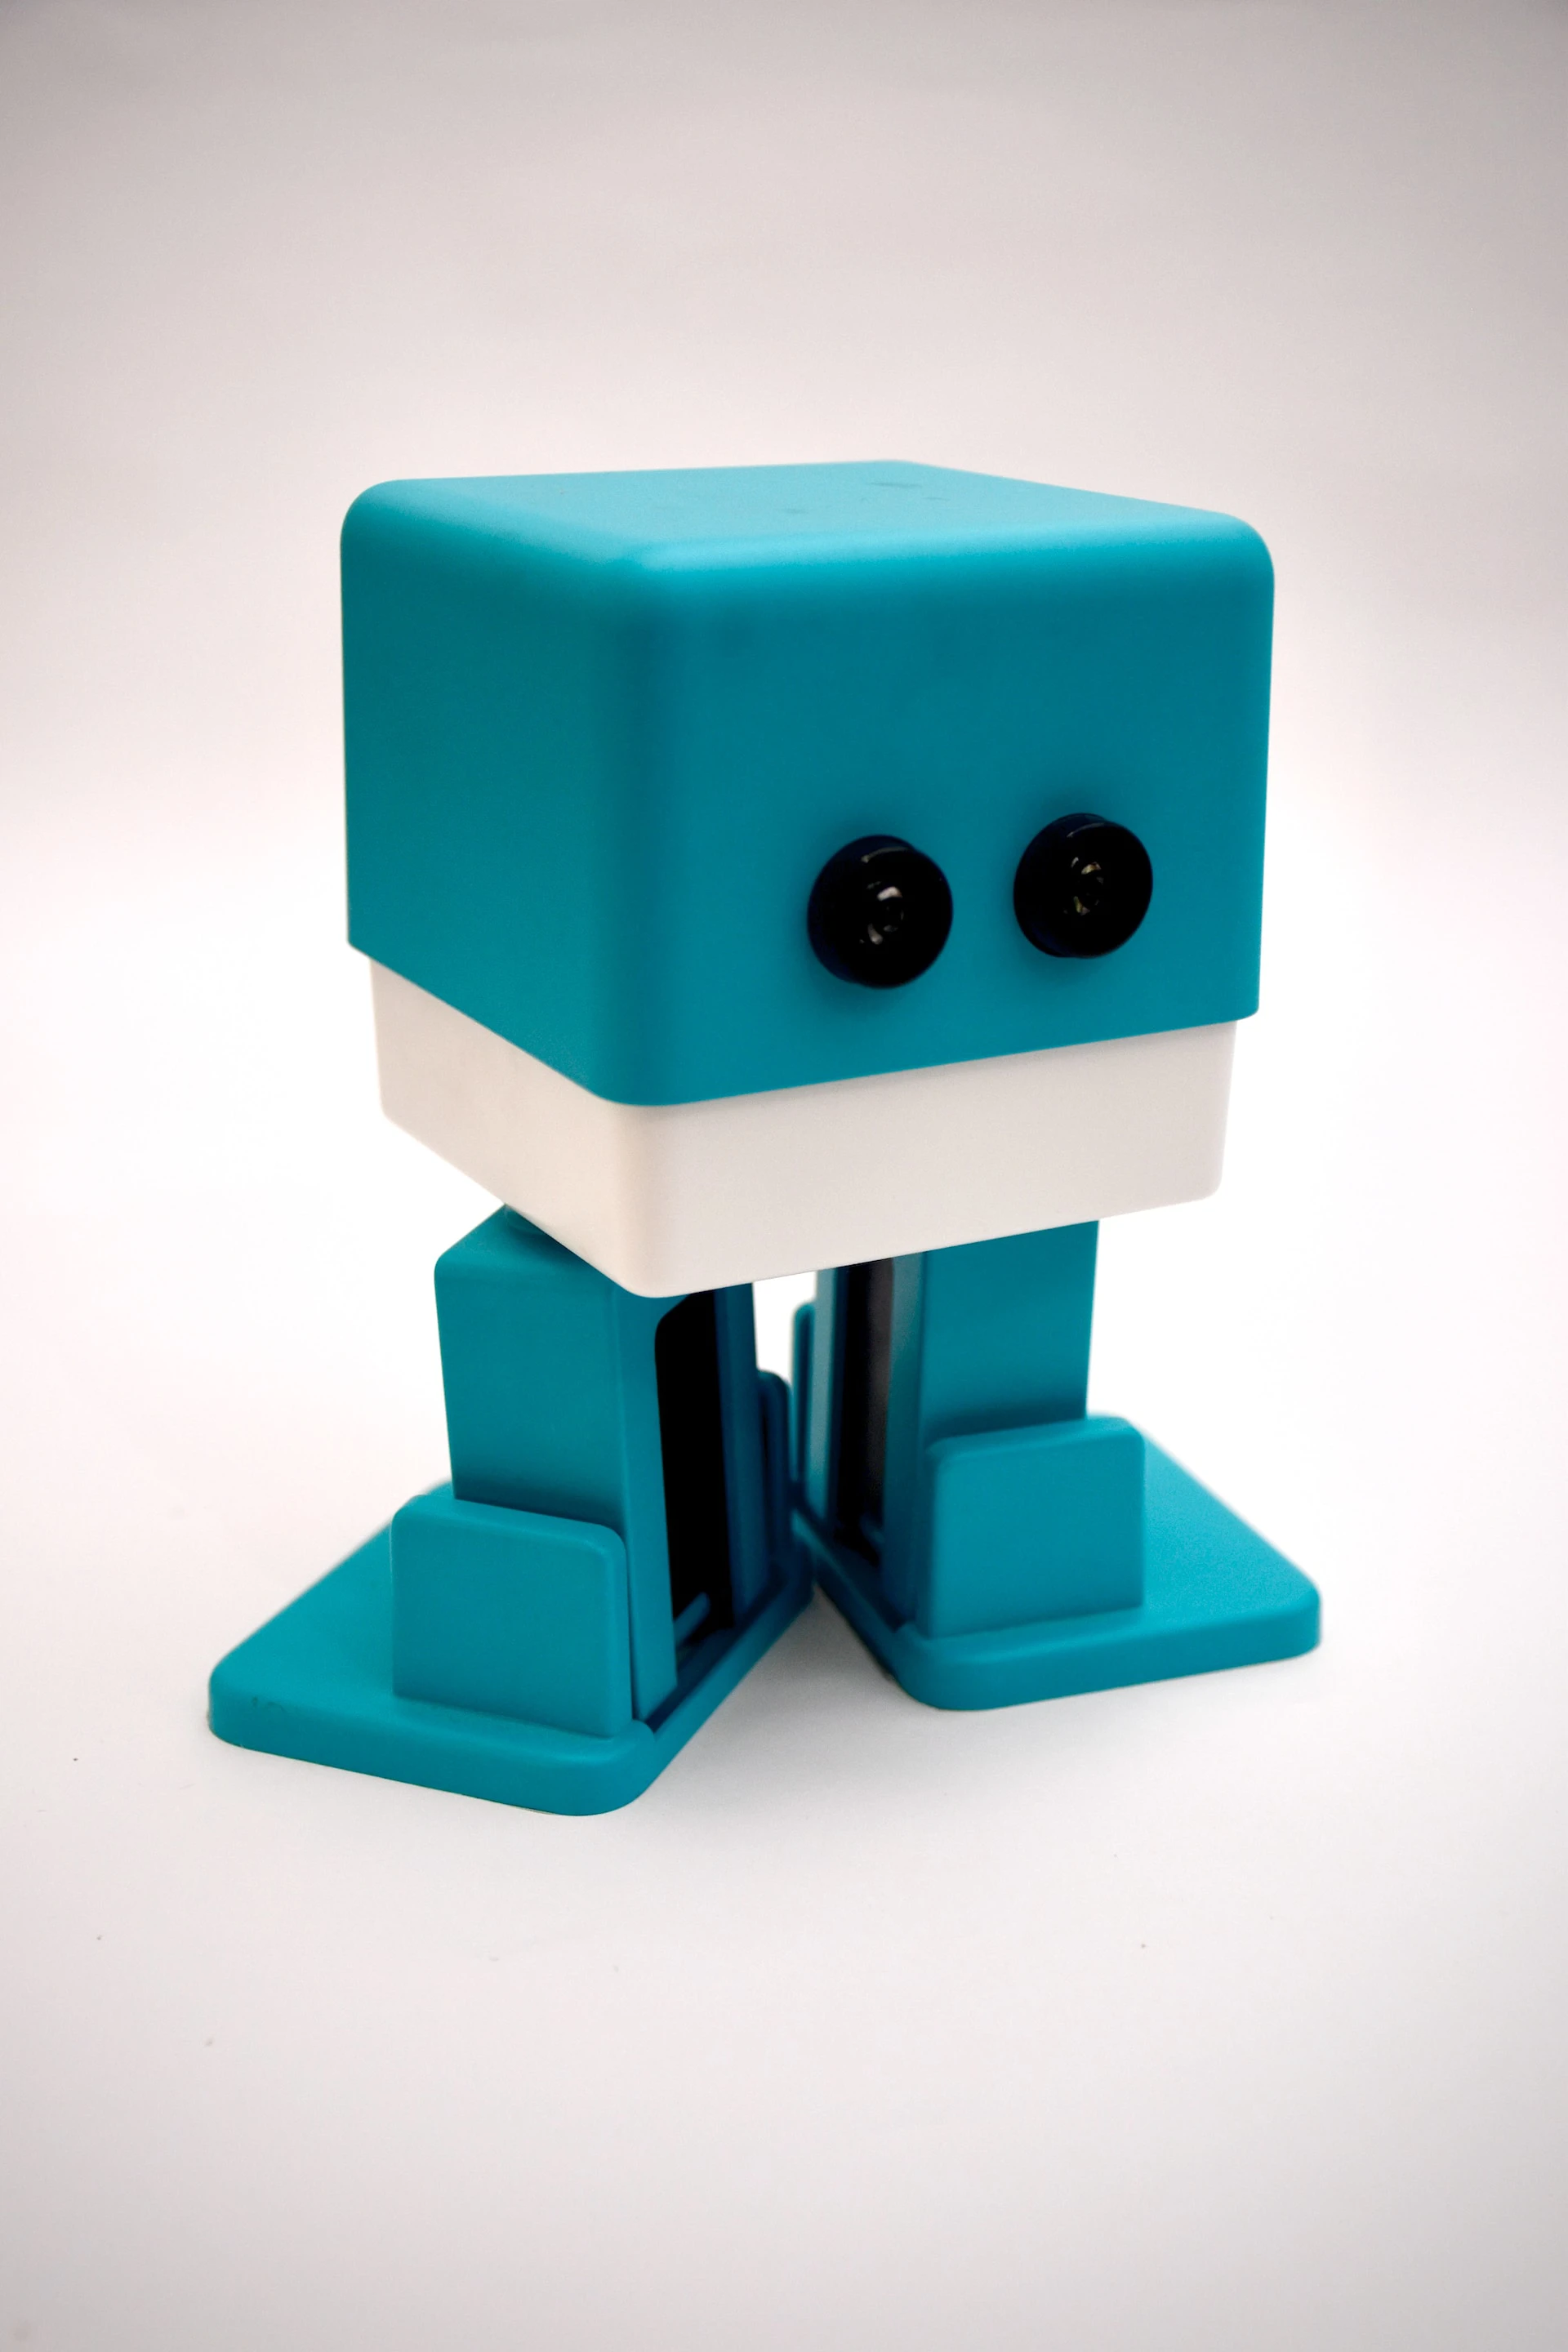 Little blue robot man